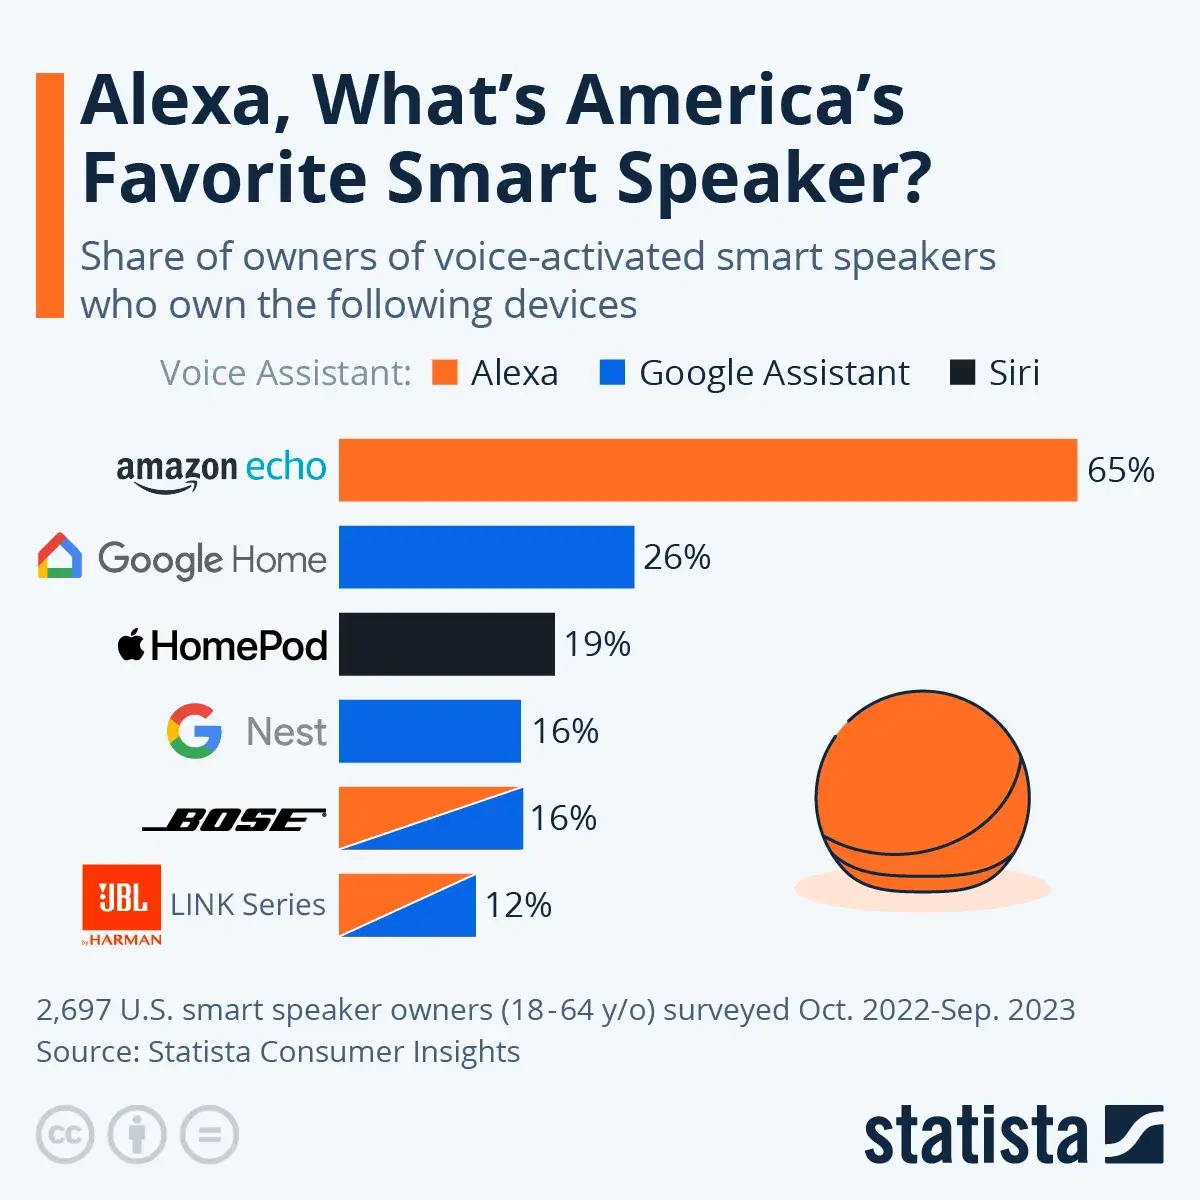 Top Smart Speakers in the U.S.